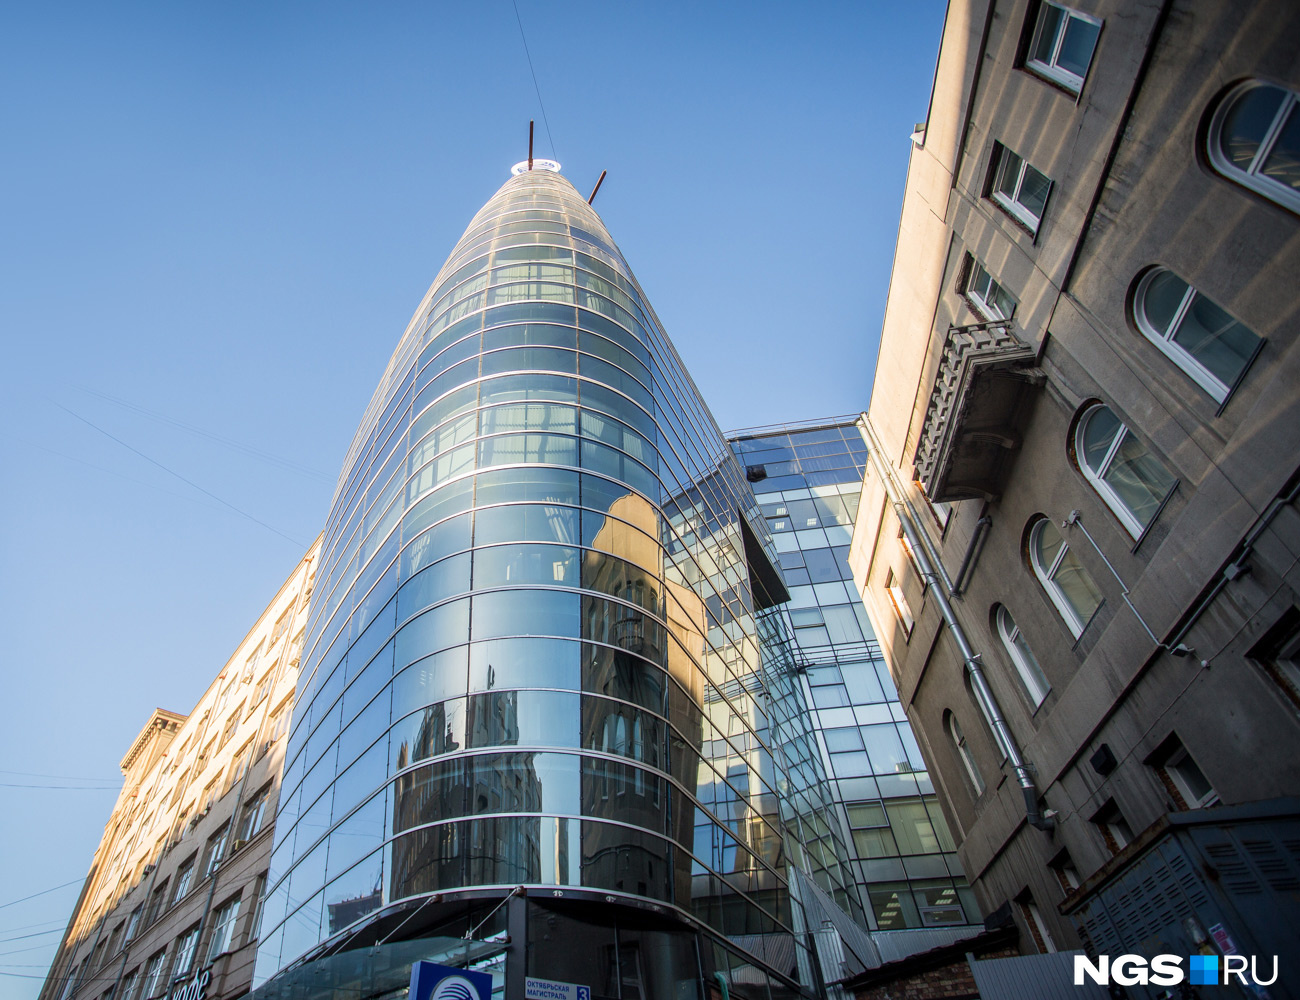 Офисное здание «Кокон» на Октябрьской магистрали, 3 становилось победителем архитектурного конкурса «Золотая капитель»